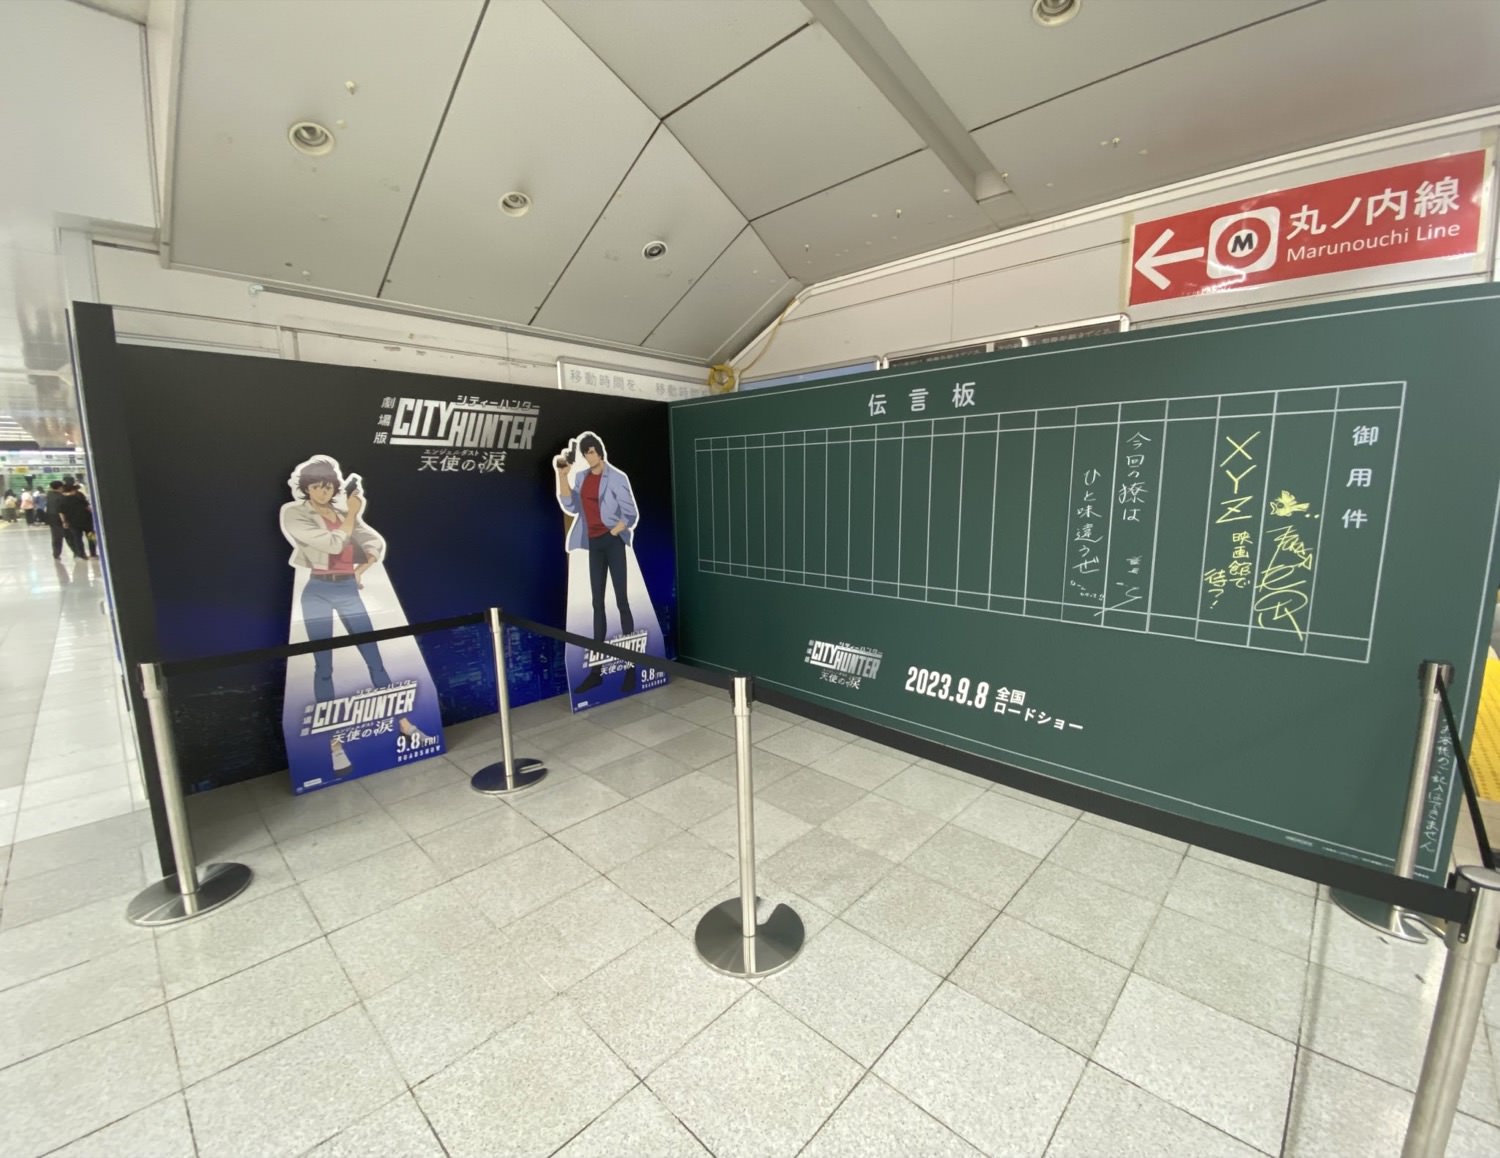 映画「シティーハンター」記念 9月10日まで新宿駅にXYZ伝言板を設置!